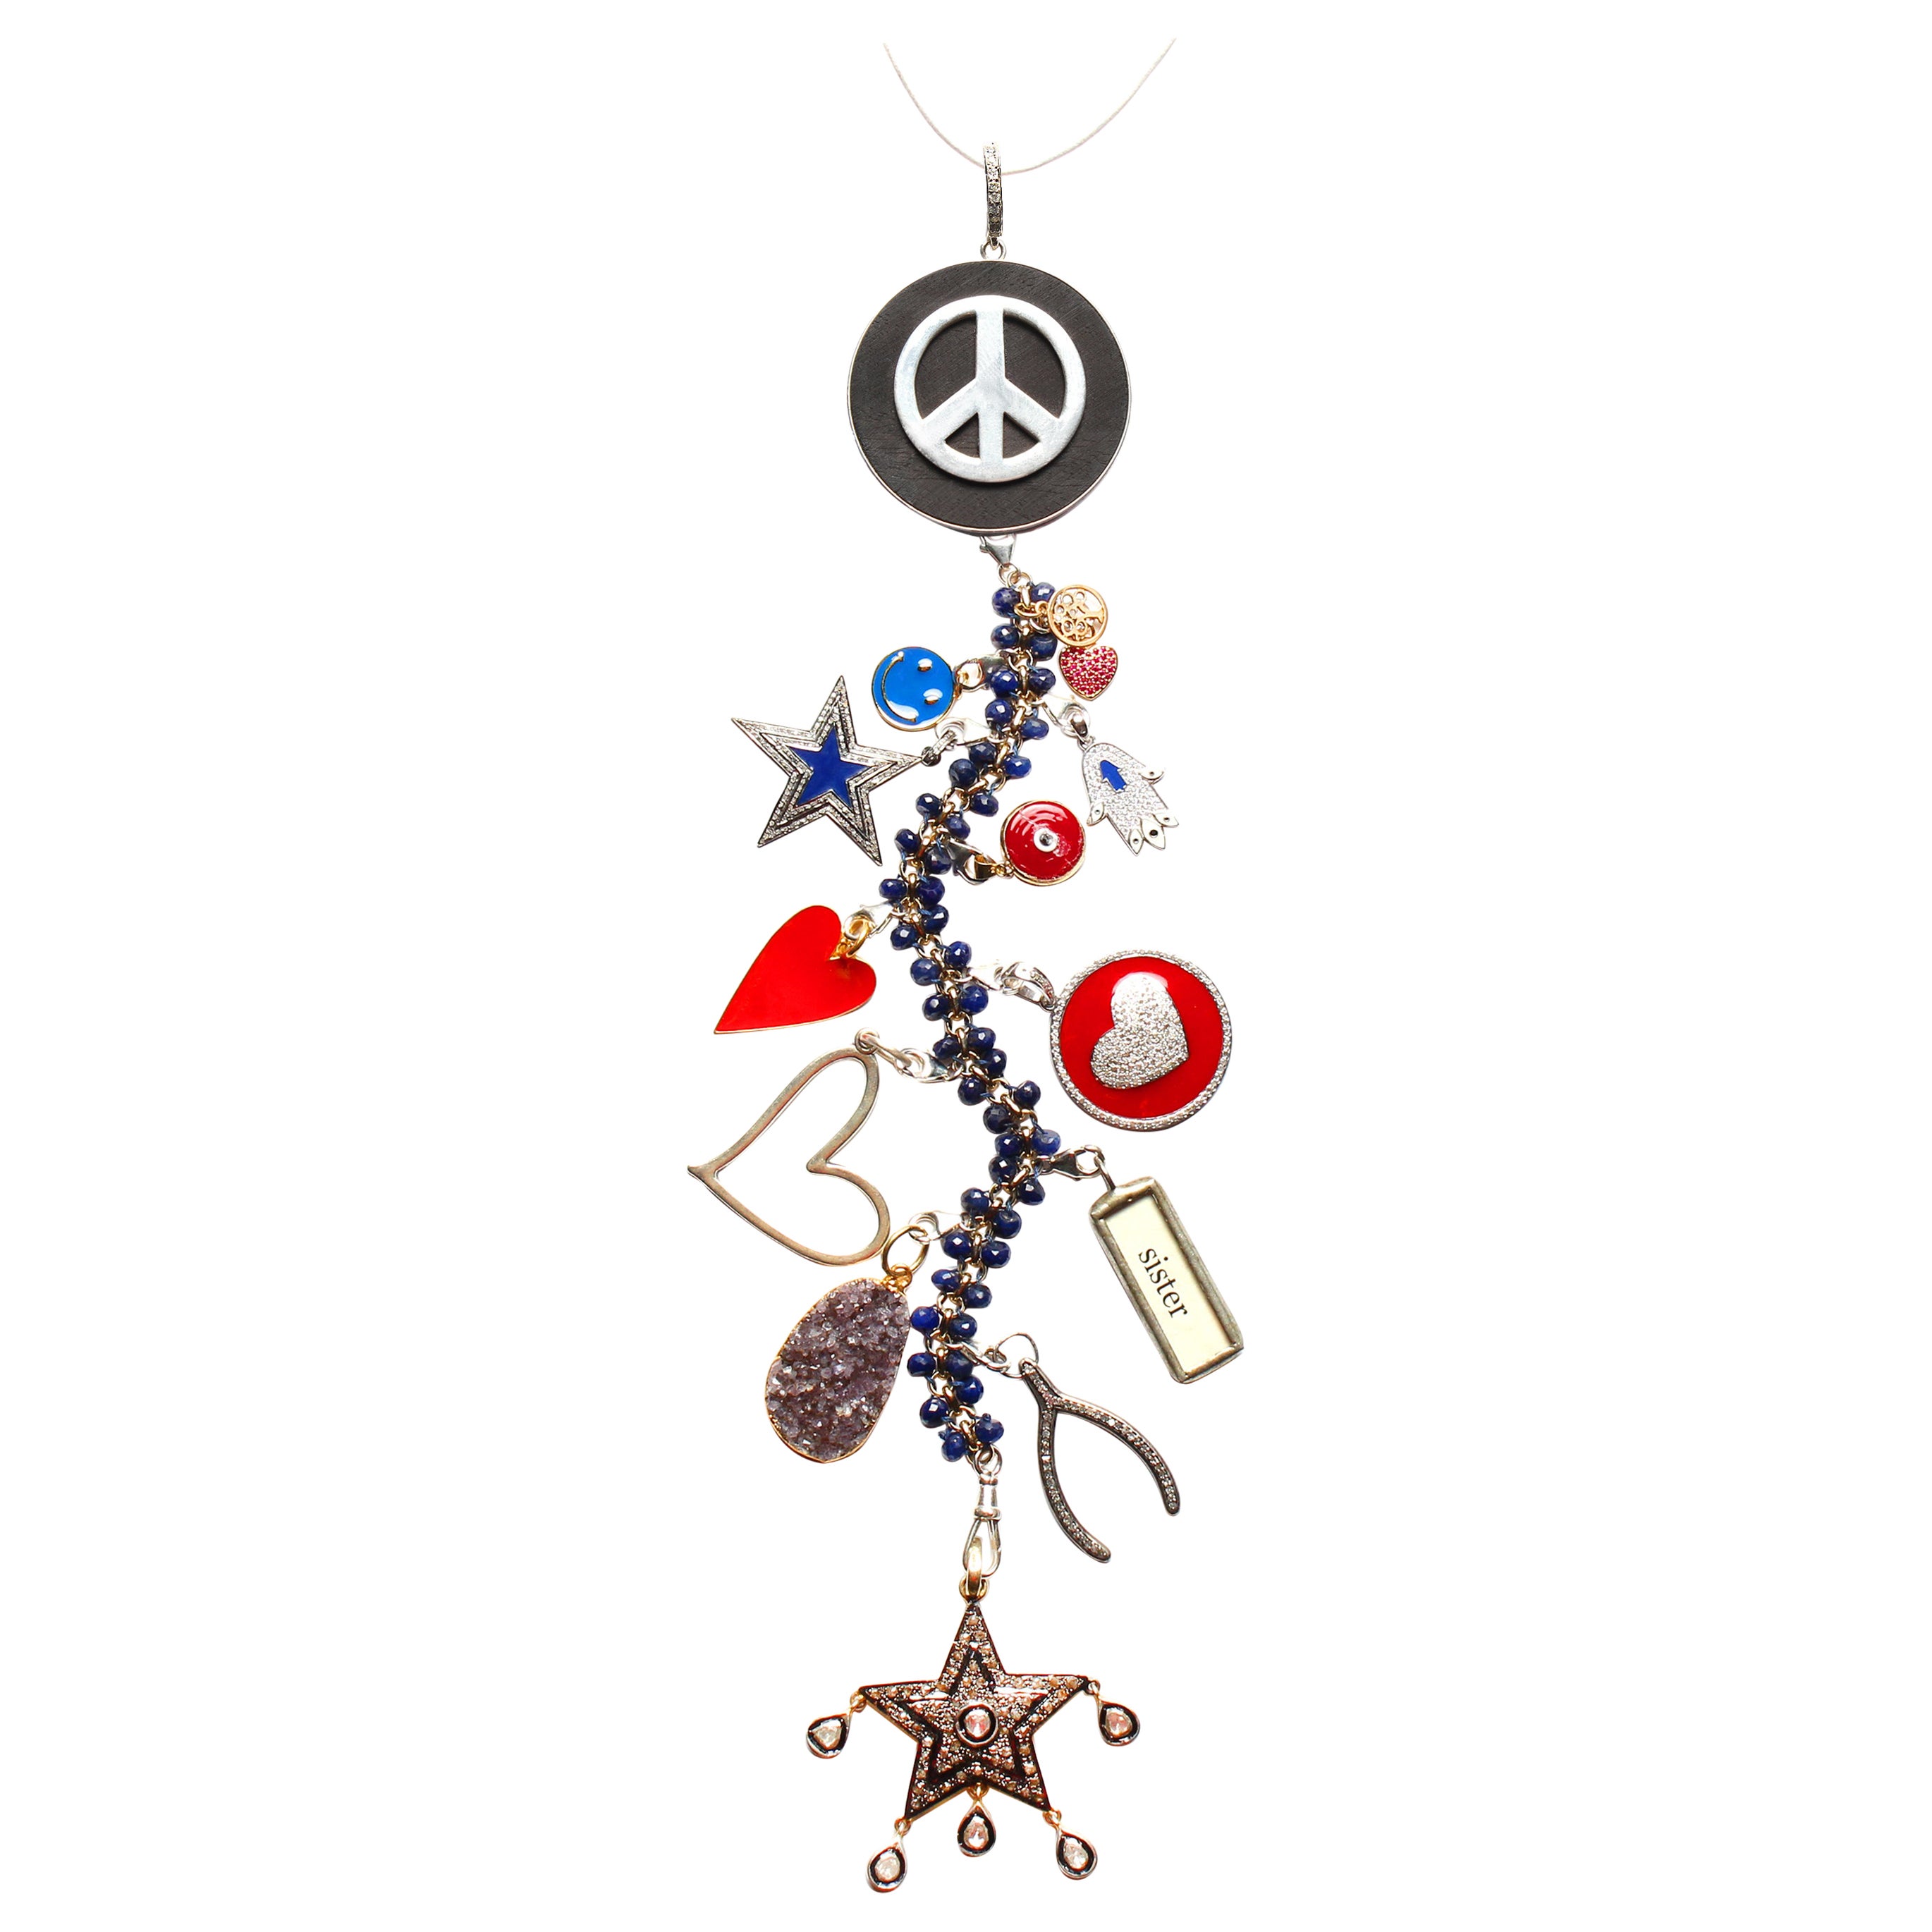 Clarissa Bronfman Signature "Imagine" Symbol Tree Necklace